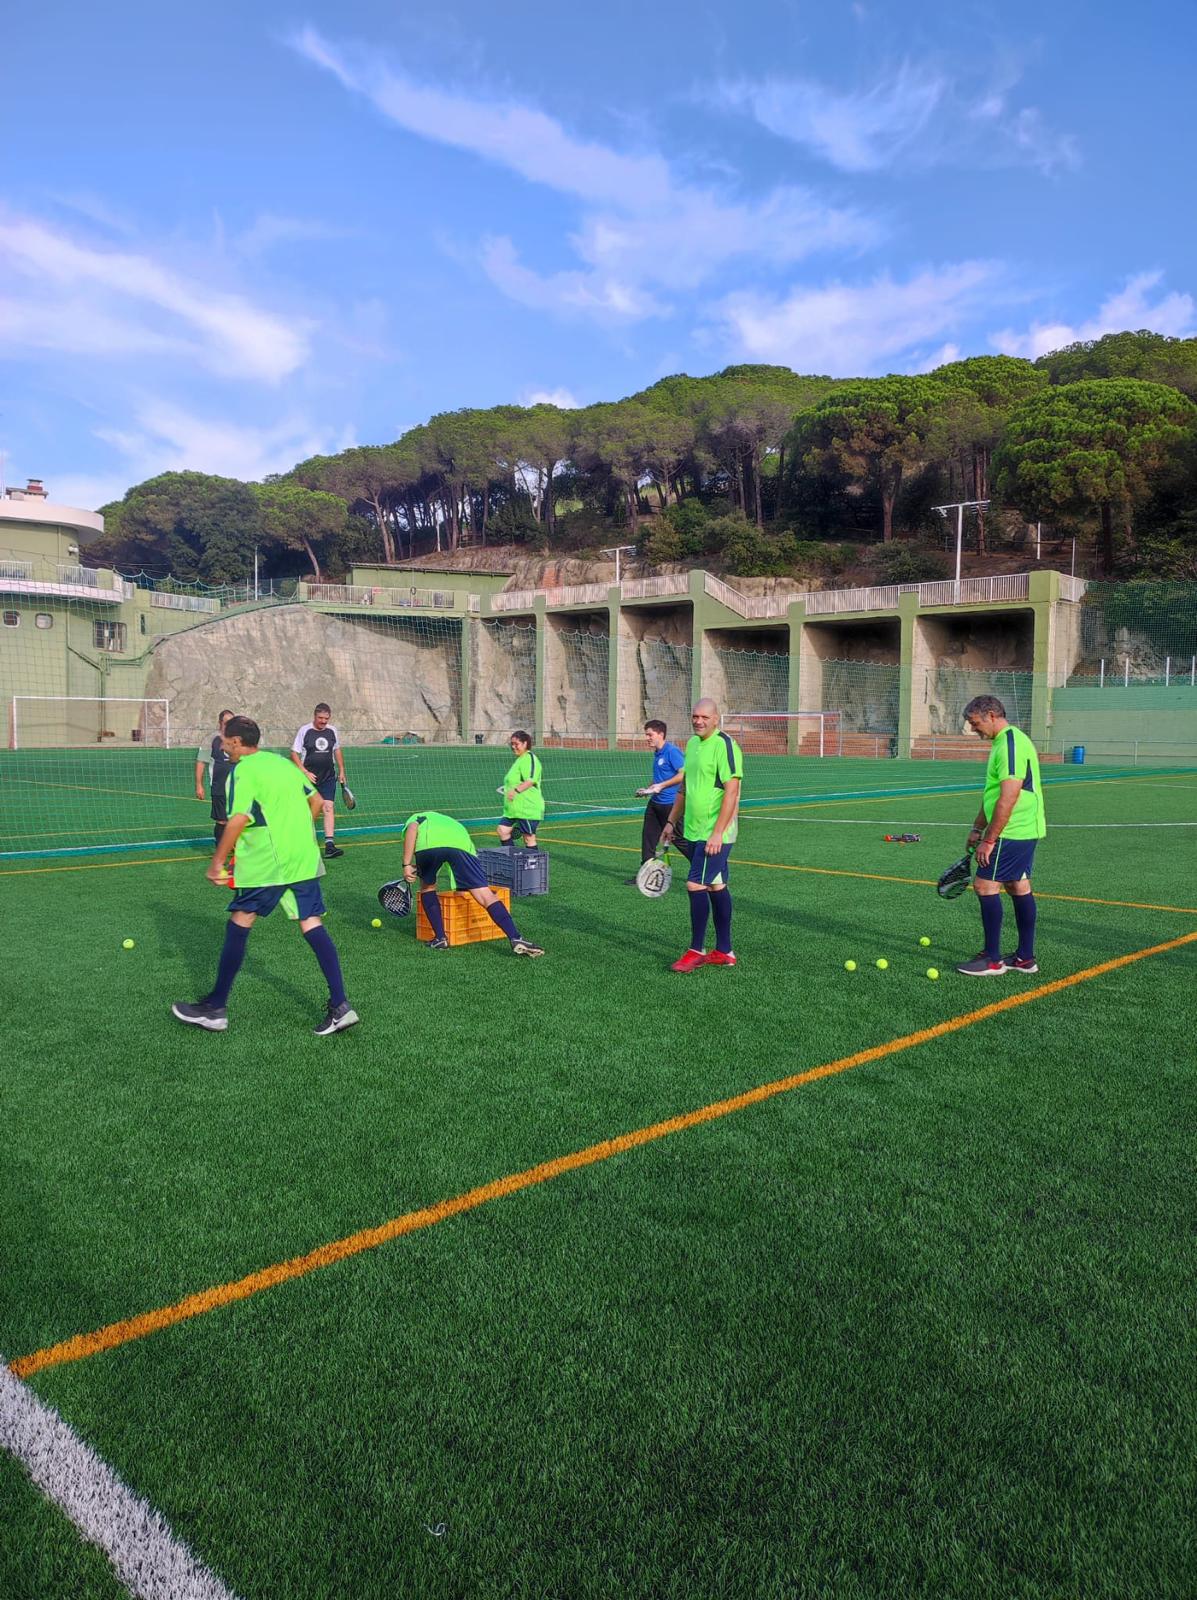 Torna INSERBALL, Un Projecte D’inclusió Social En L’esport, Amb El Suport De CaixaBank